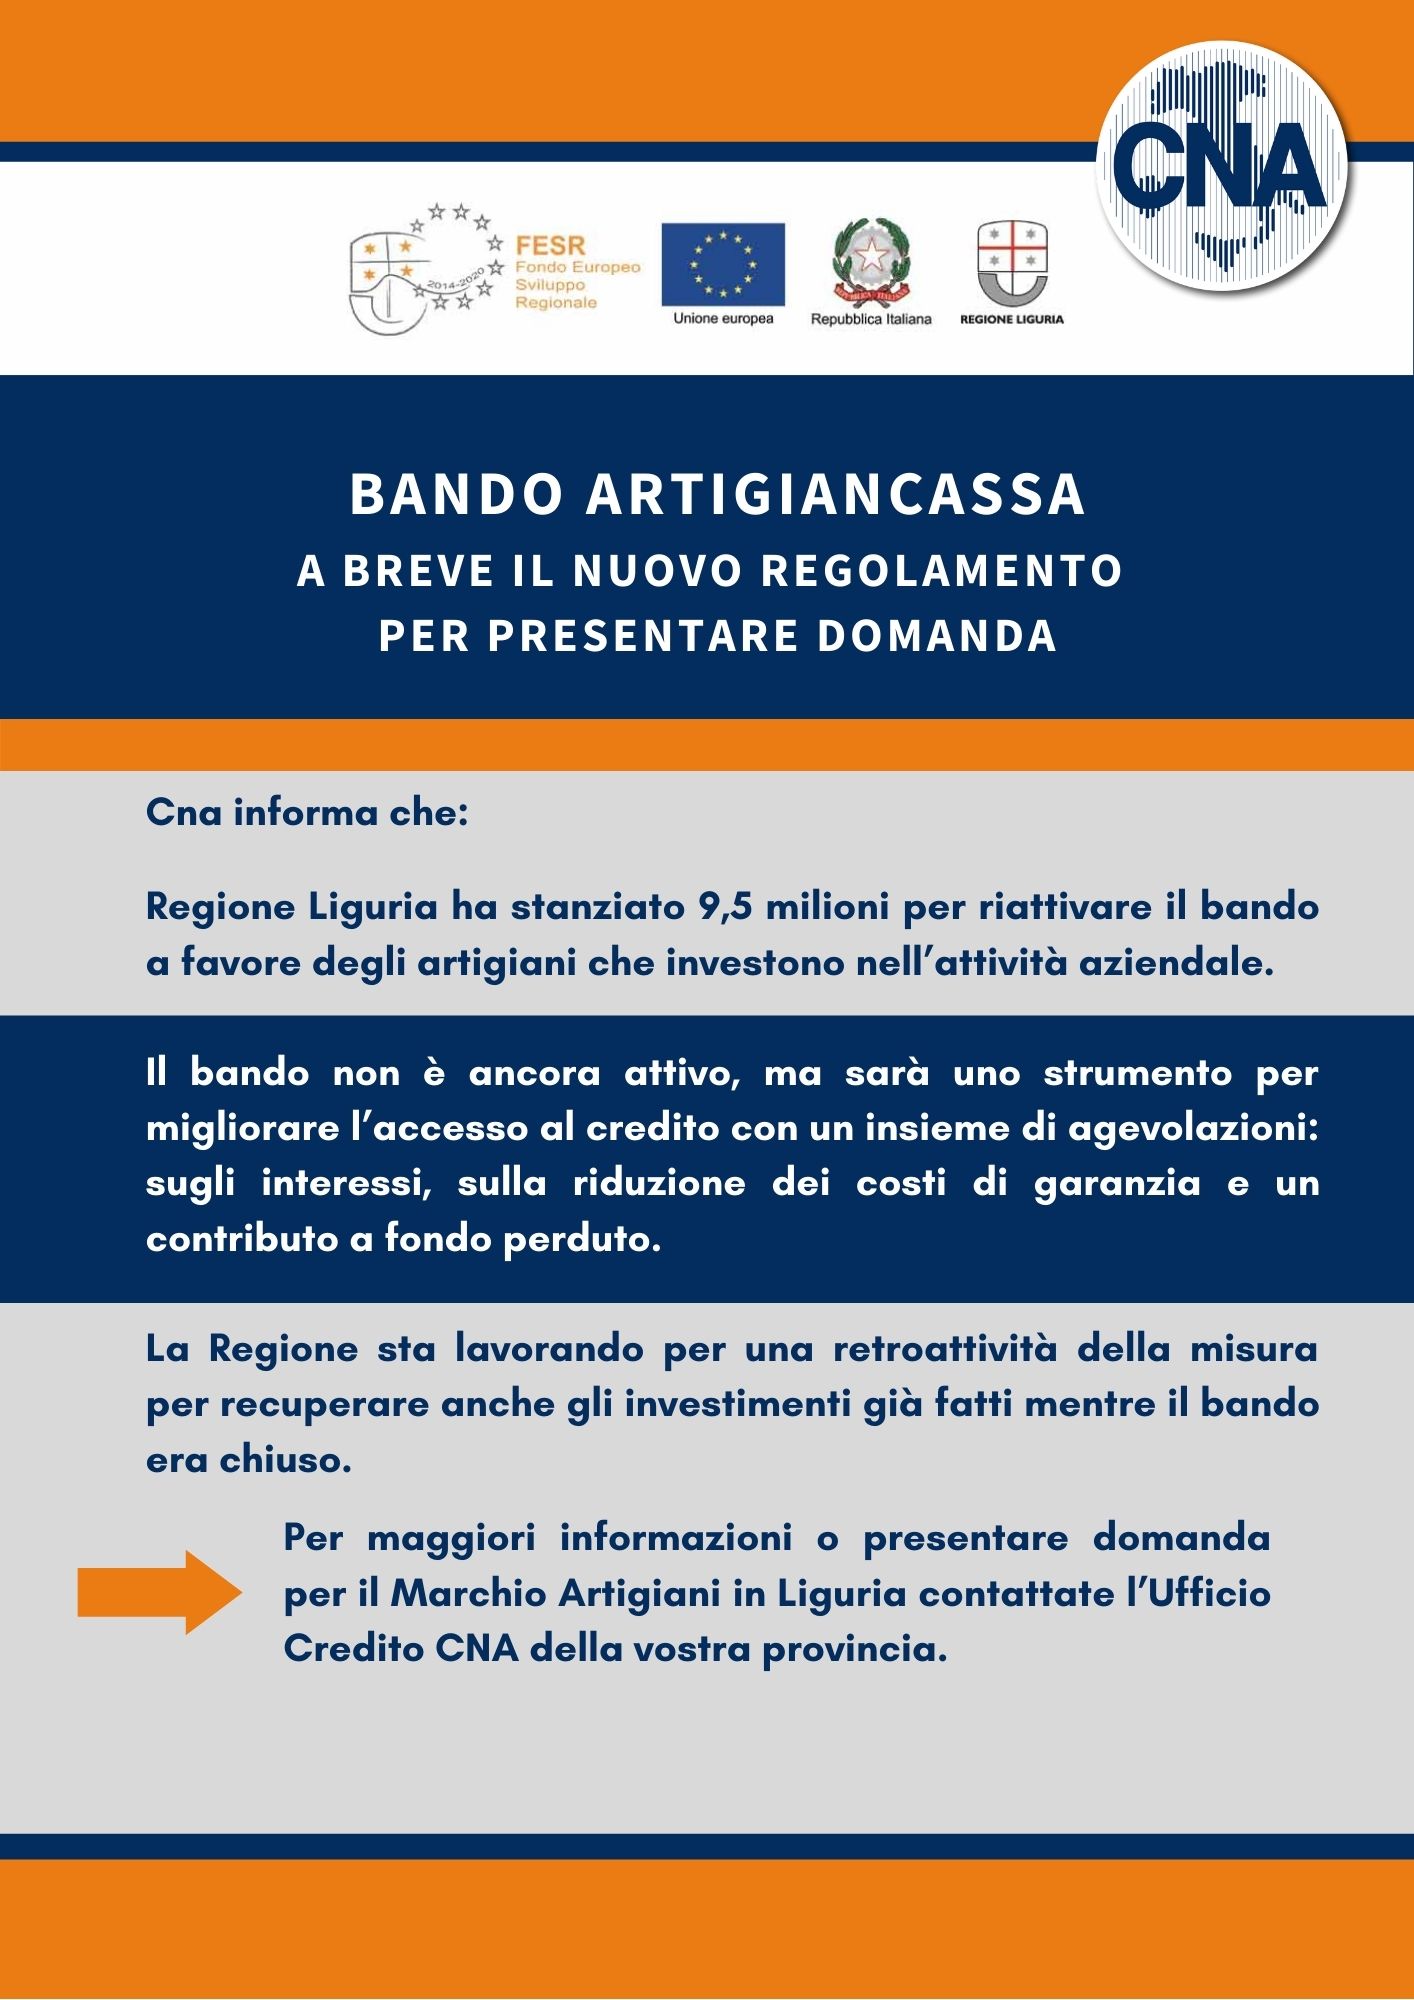 CNA Bando Artigiancassa info contributi Liguria